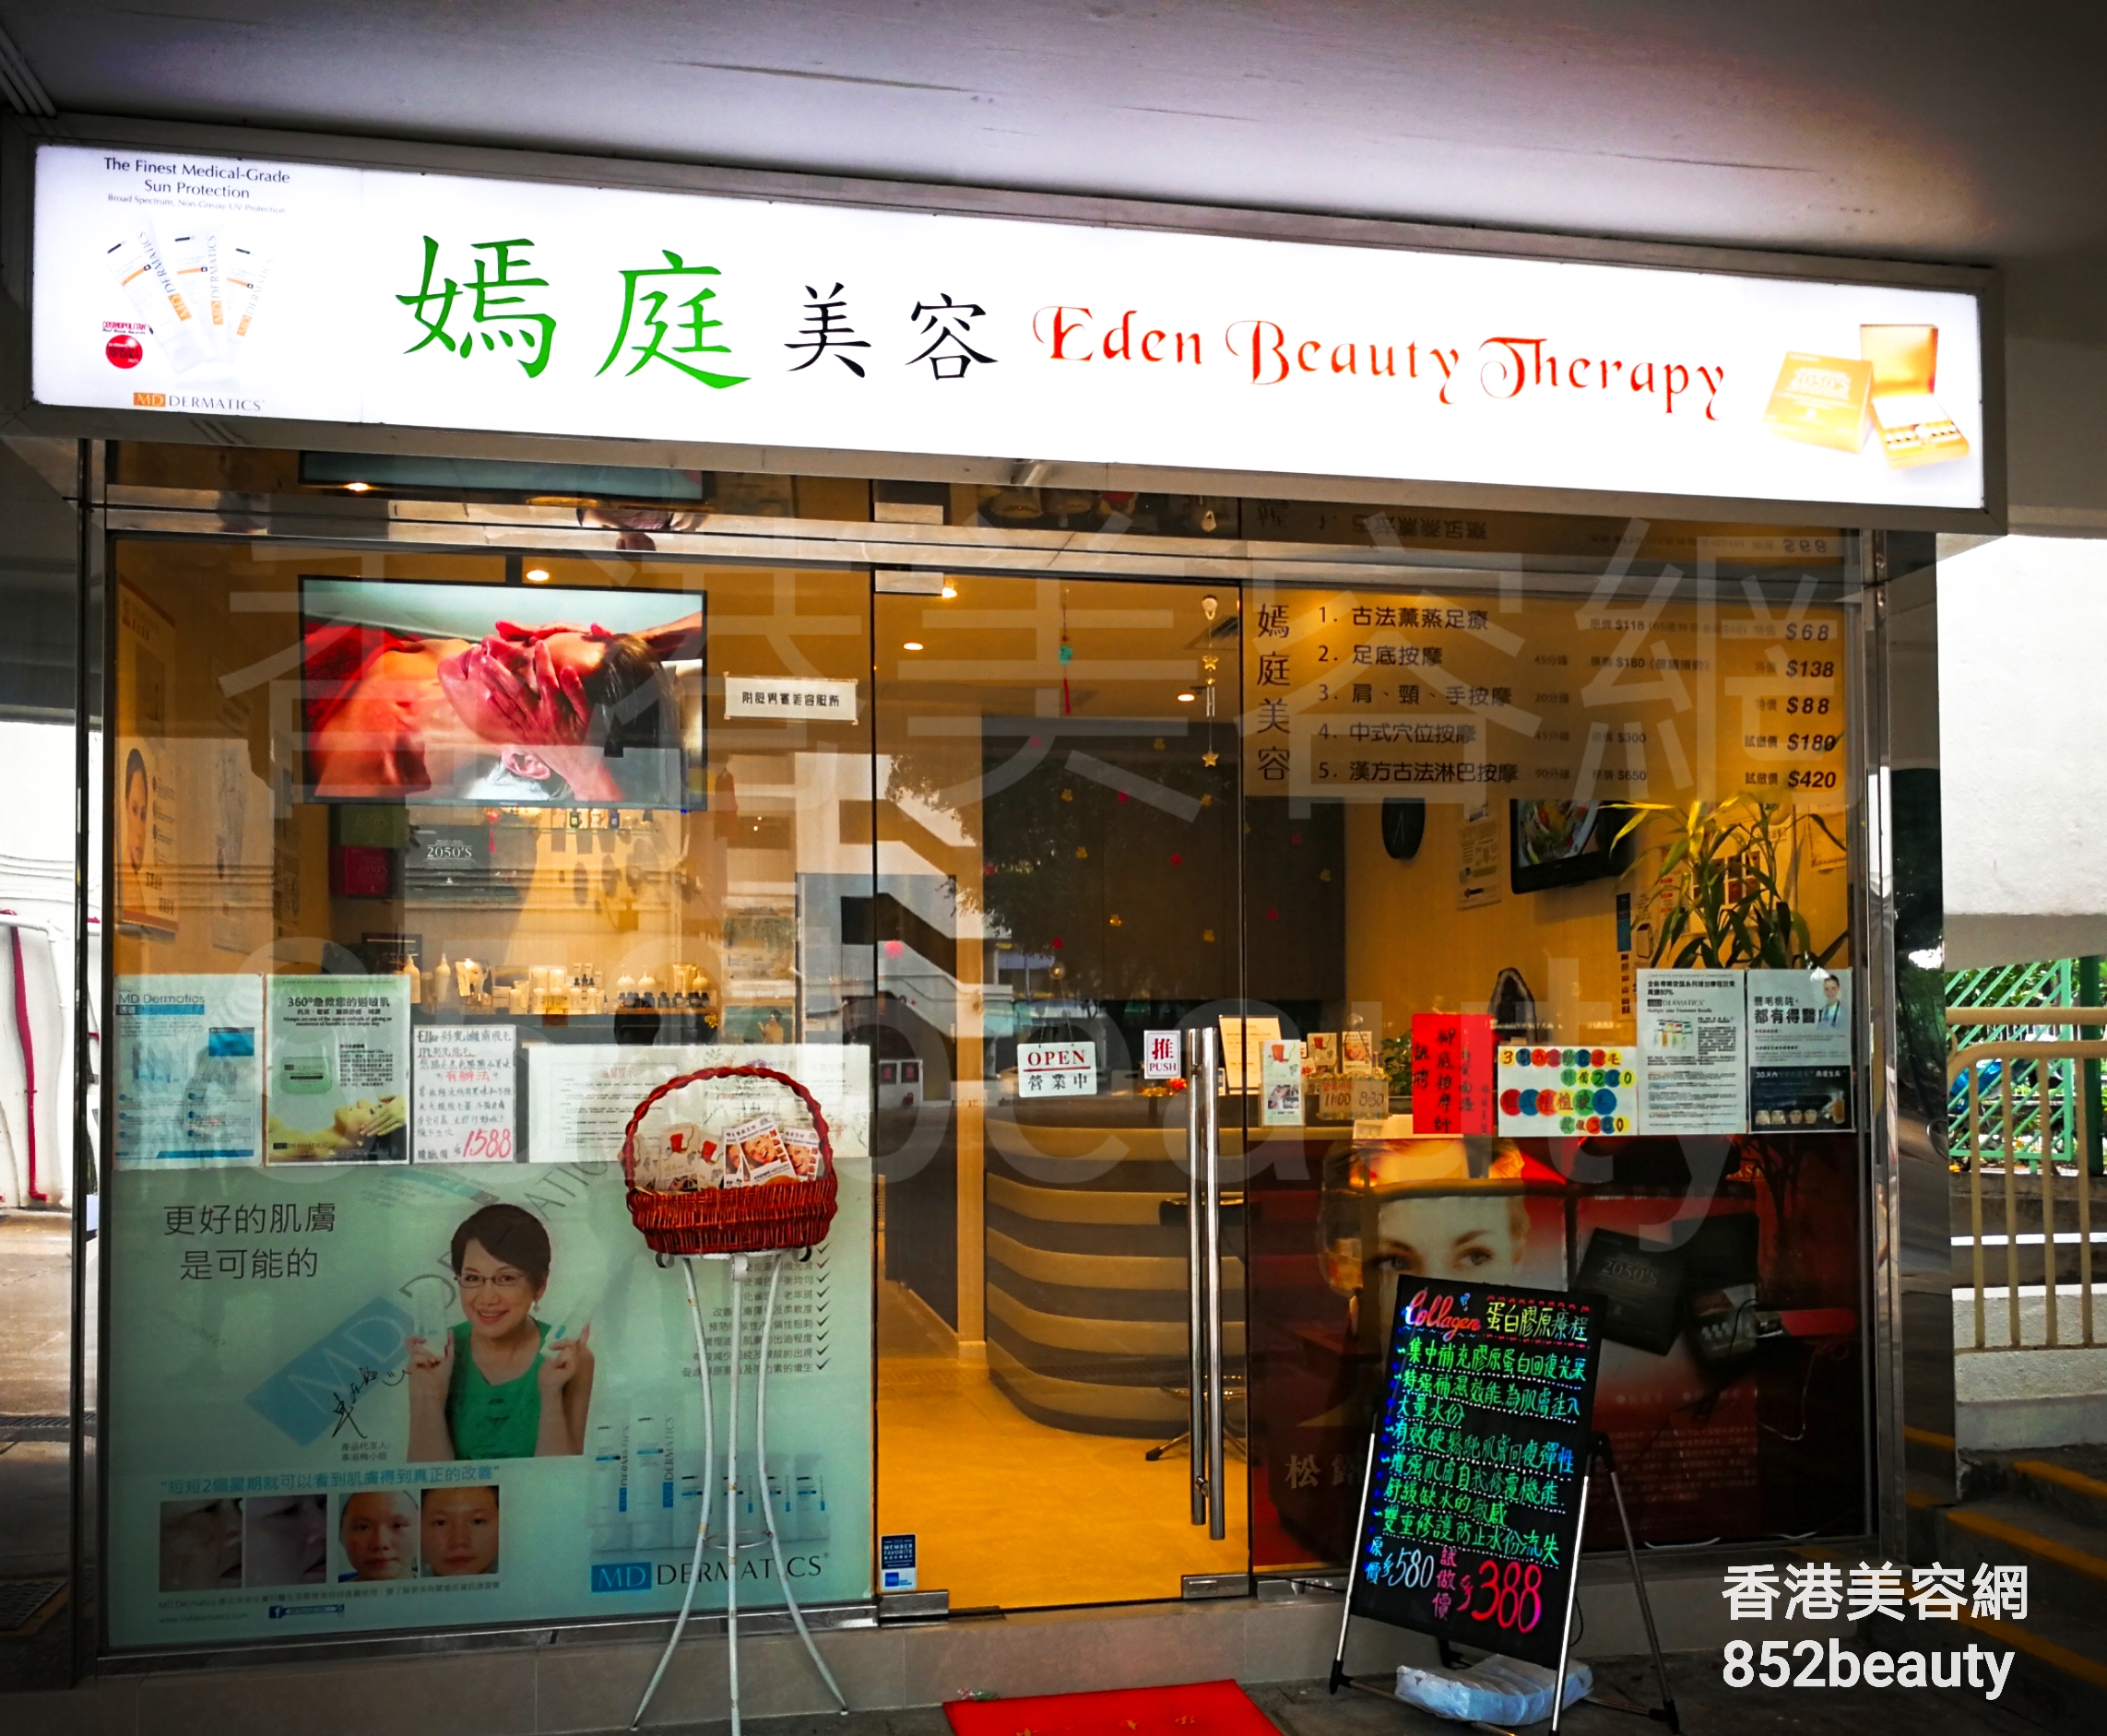 香港美容網 Hong Kong Beauty Salon 美容院 / 美容師: 嫣庭美容